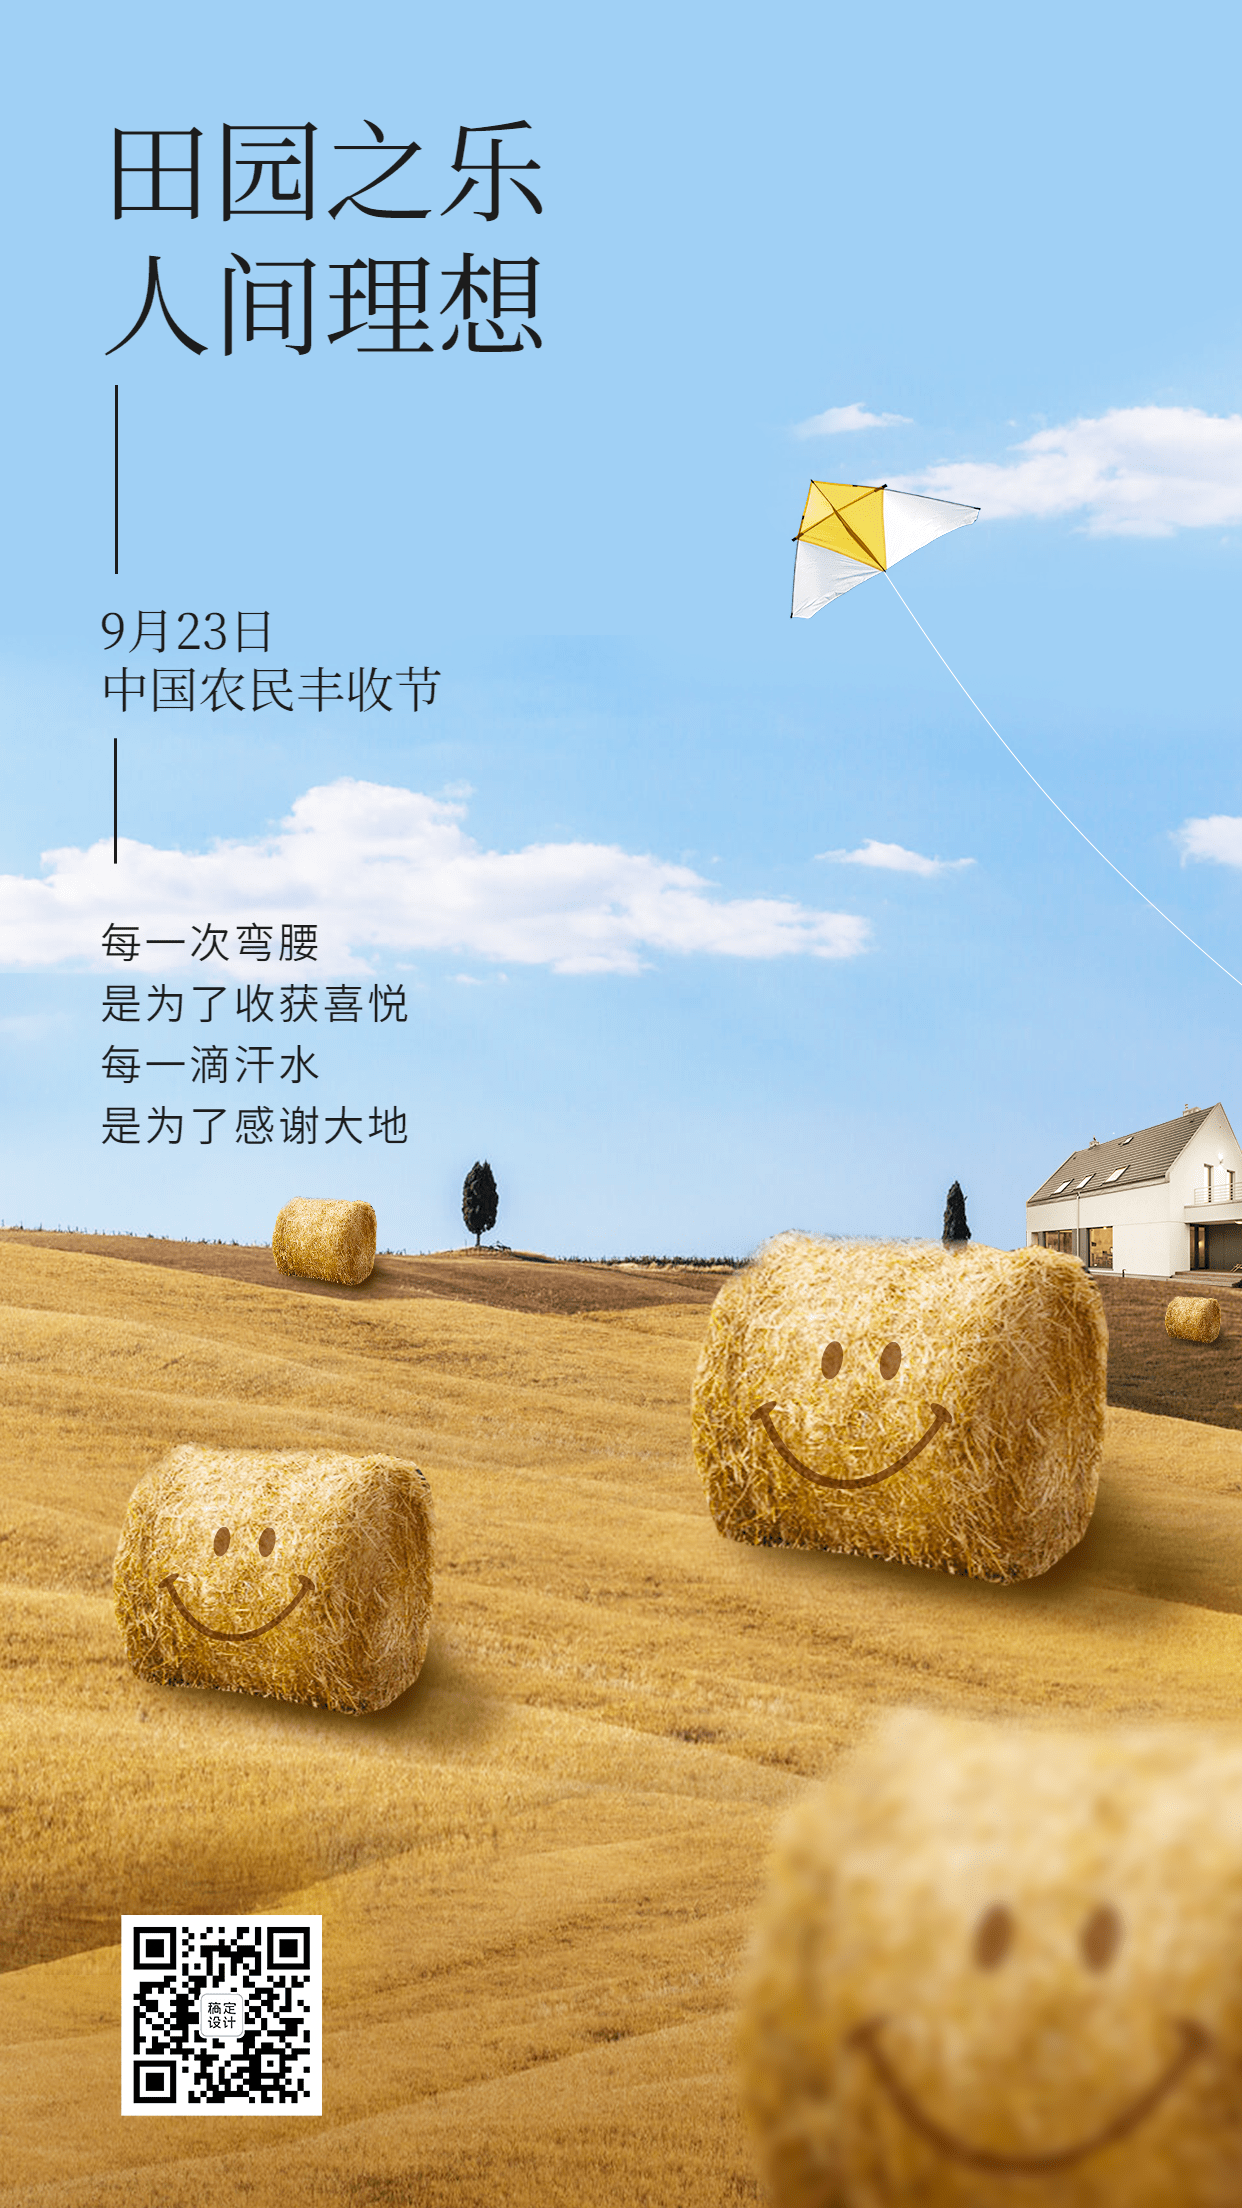 中国农民丰收节节日宣传创意合成手机海报